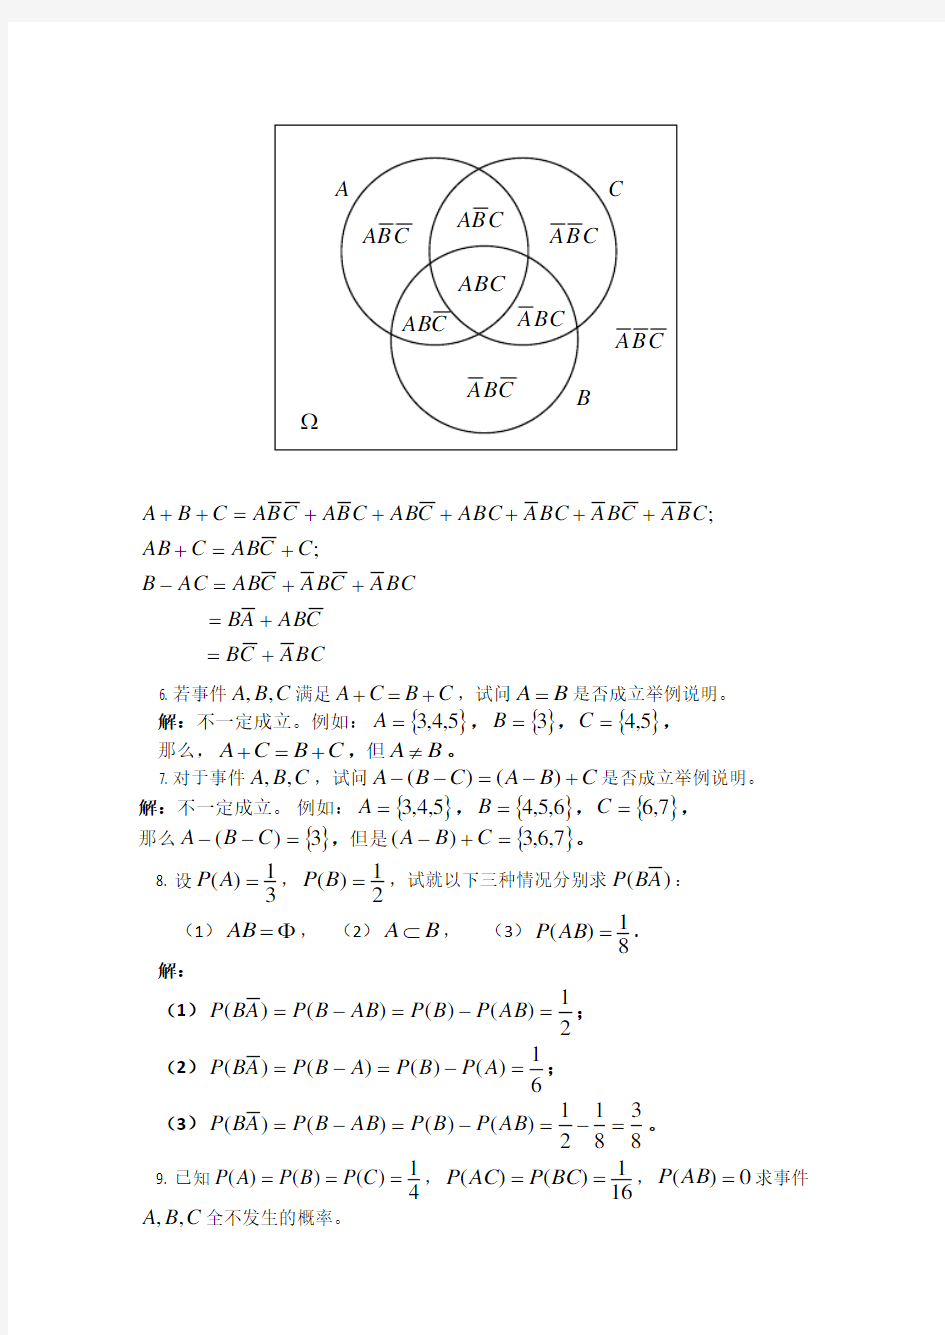 四川大学出版社《概率论与数理统计》课后习题答案chapter1